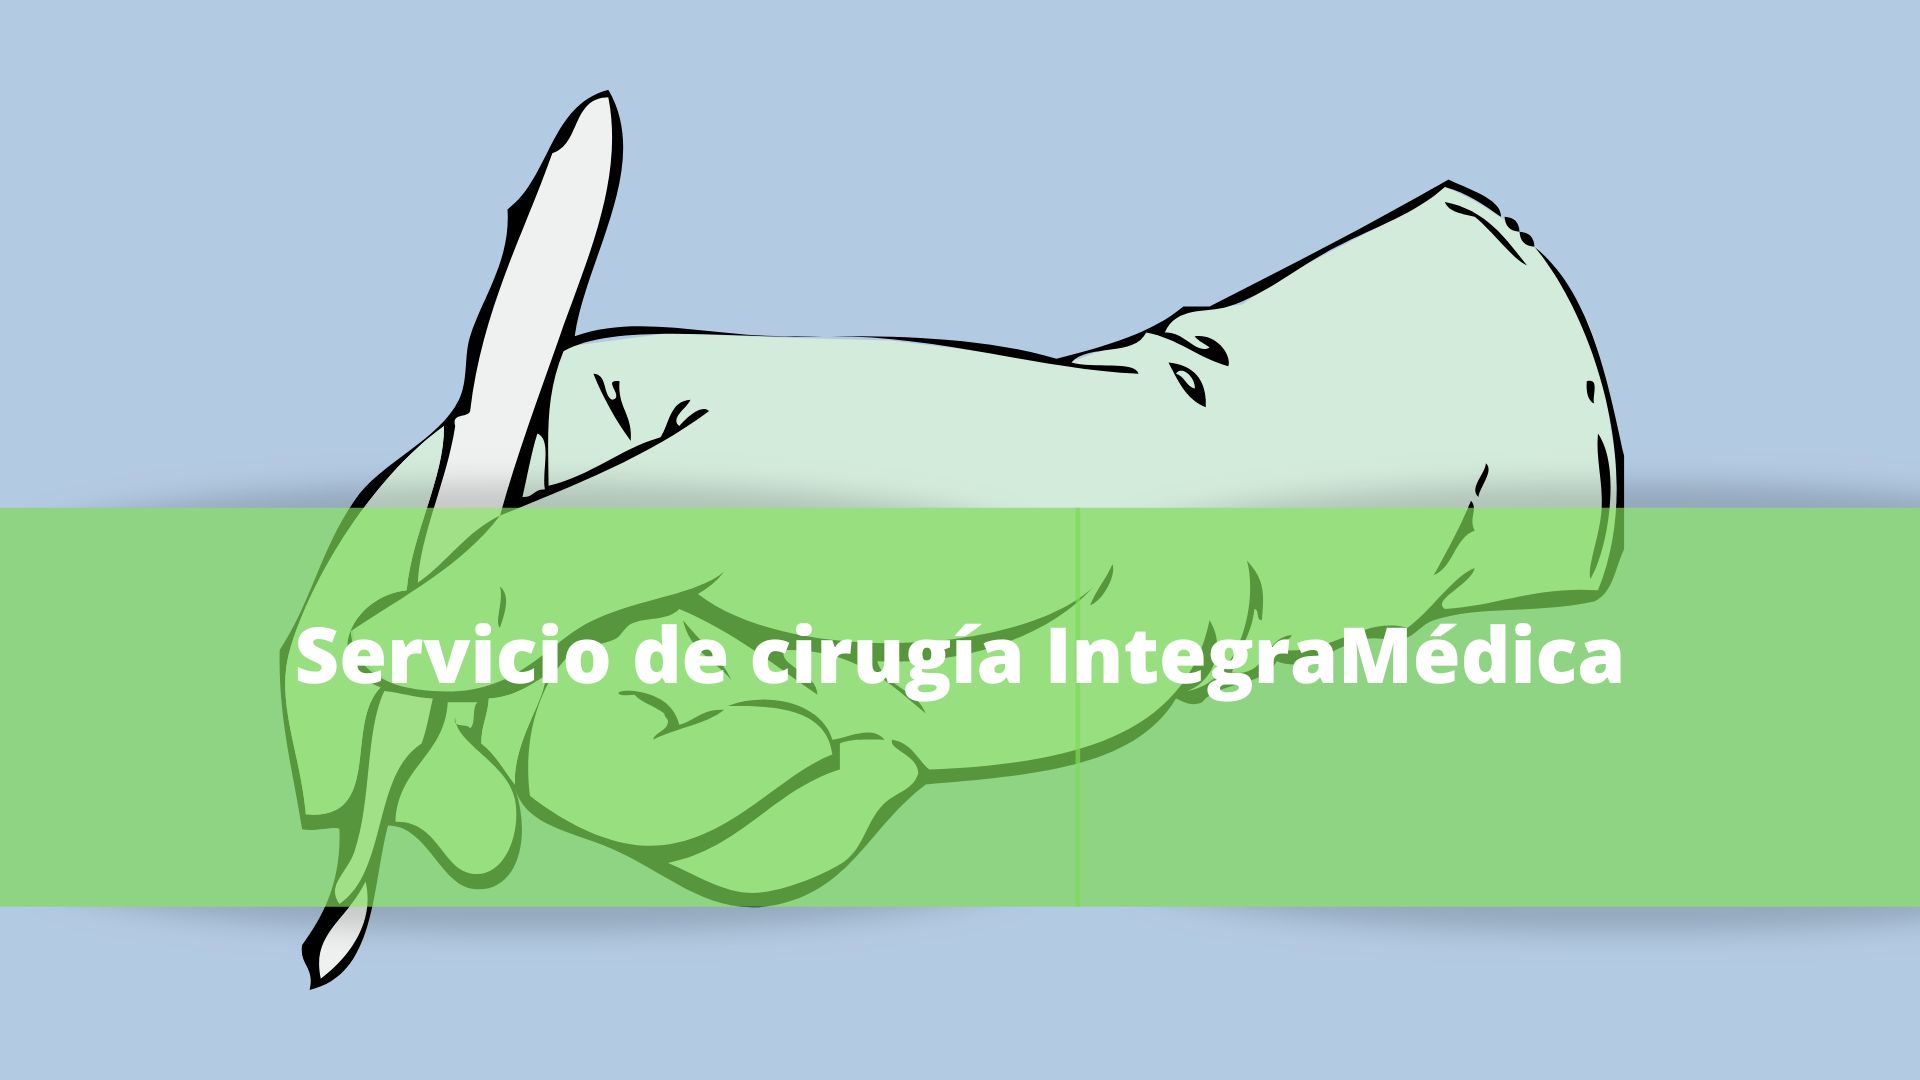 Servicio de cirugía IntegraMédica